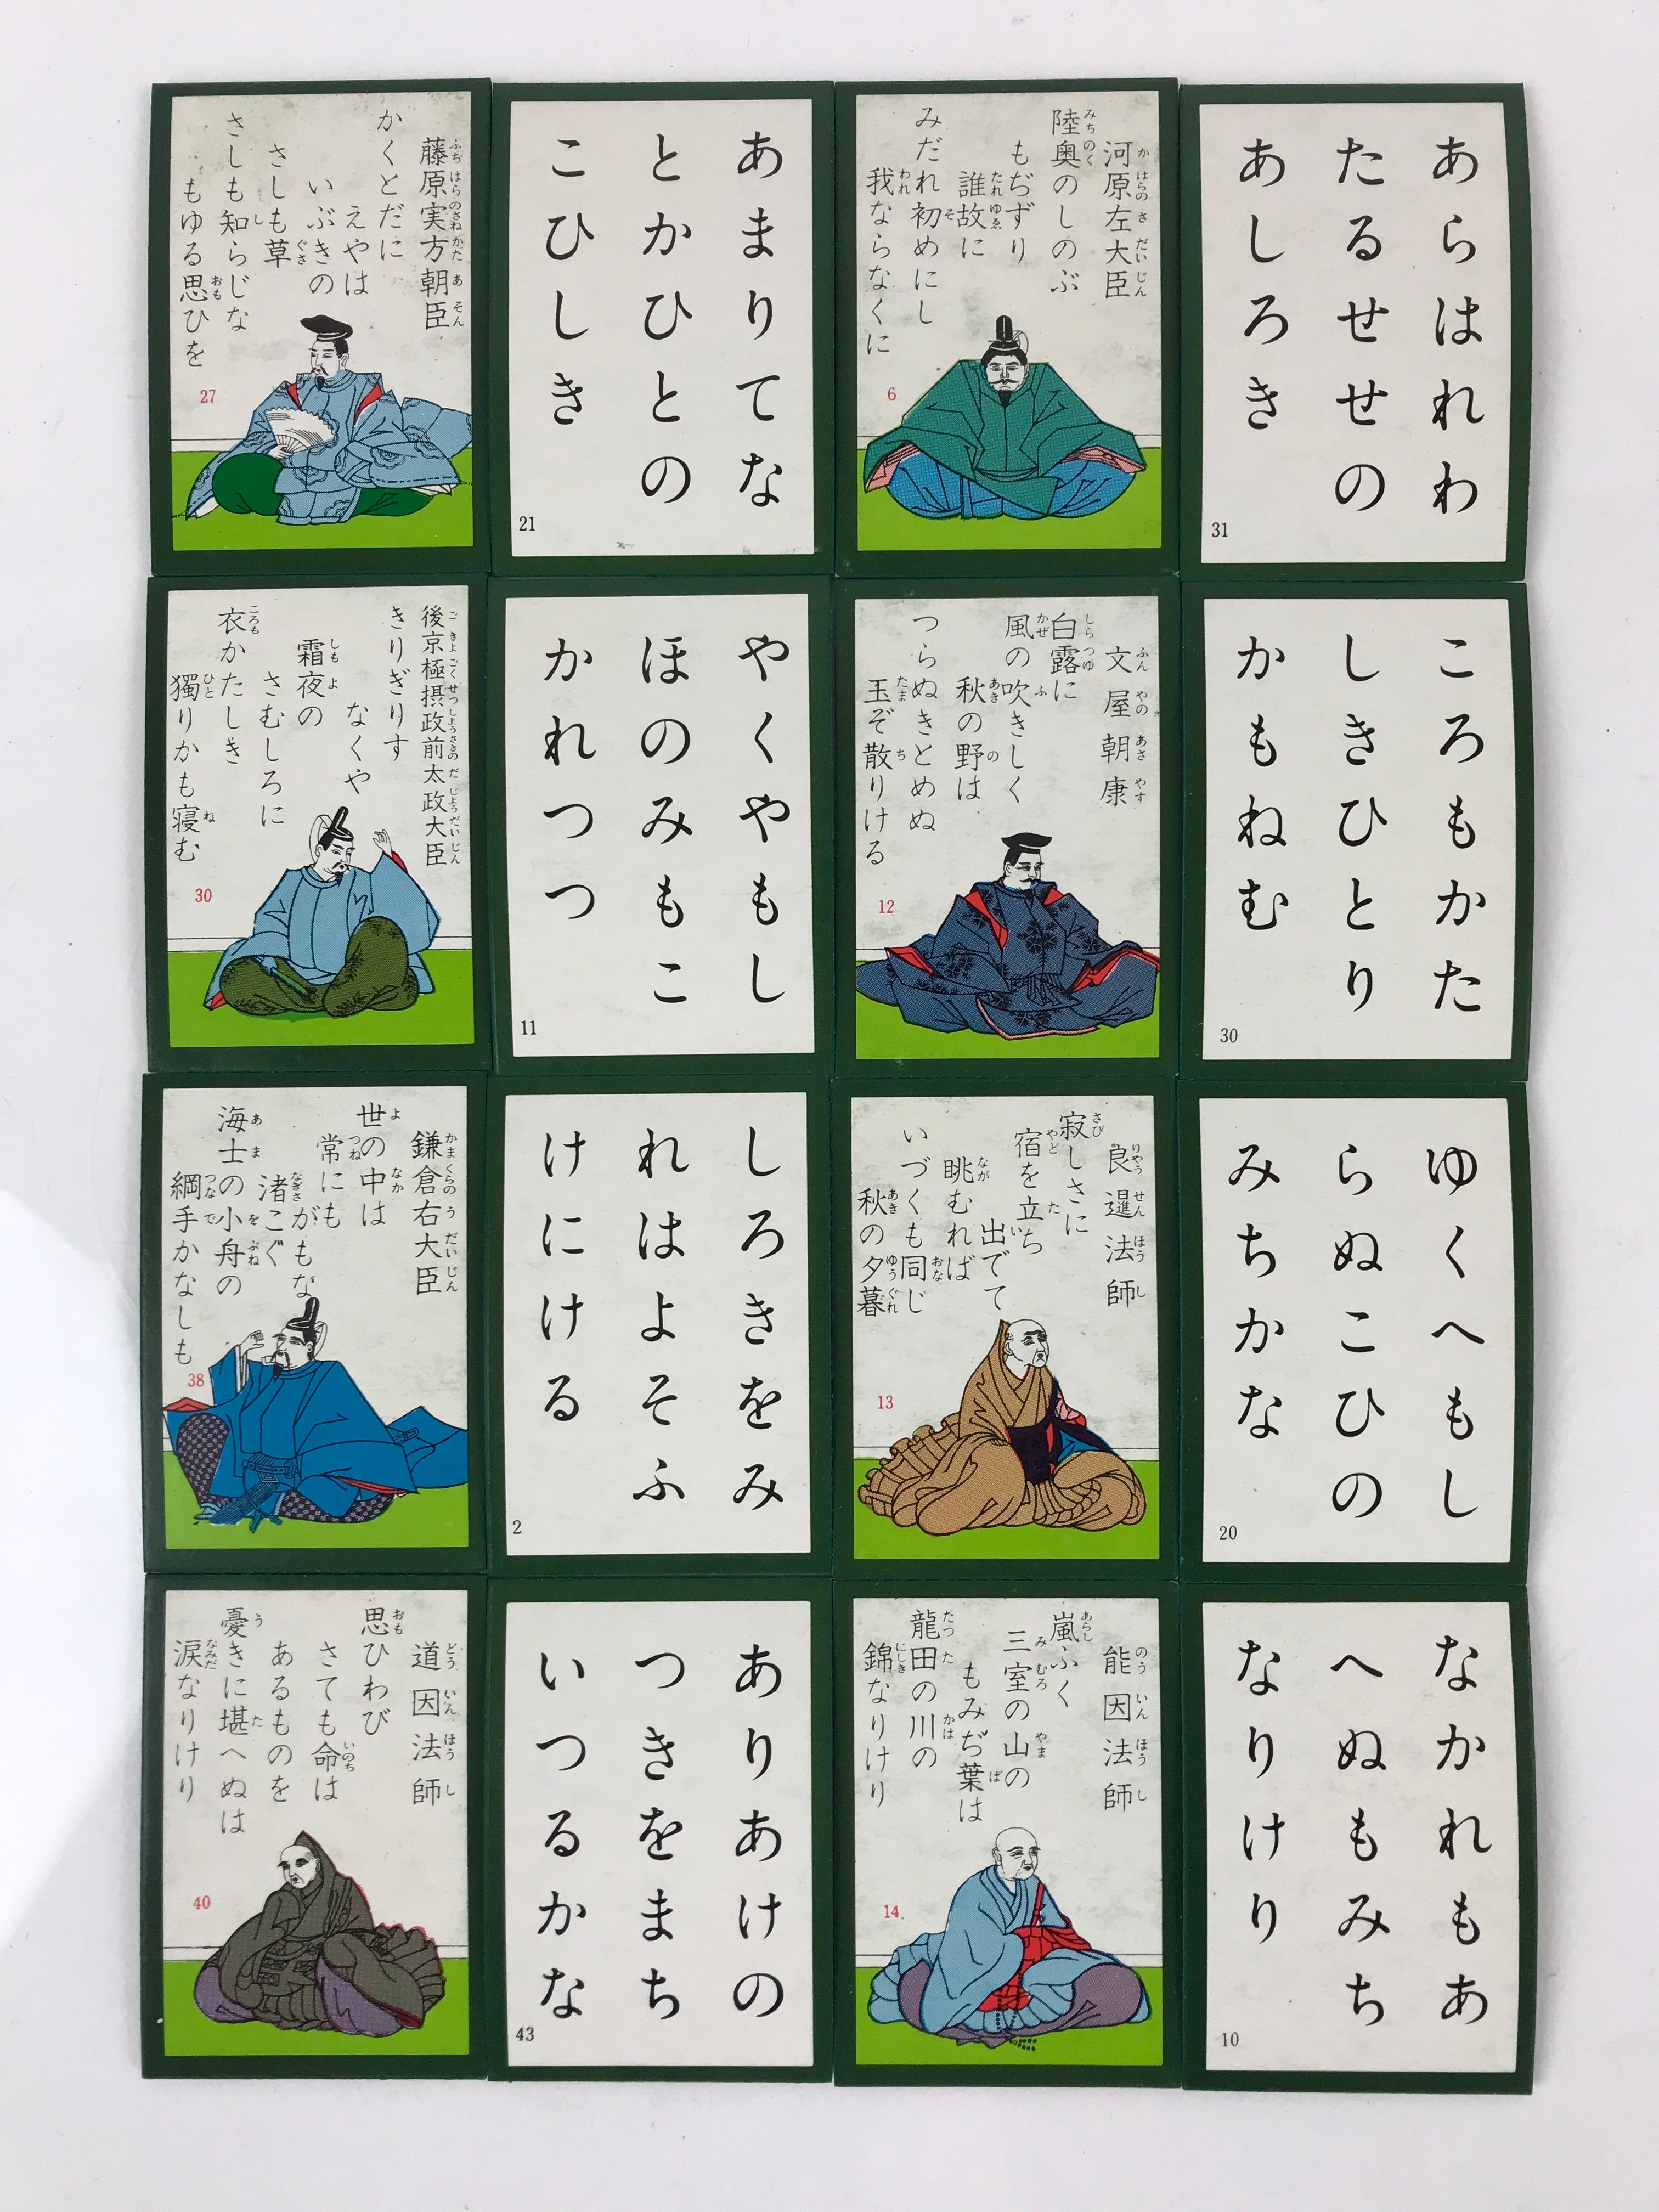 Japanese Hyakunin Isshu Vtg Playing Cards Karuta 100 Poem Matching Game JK479